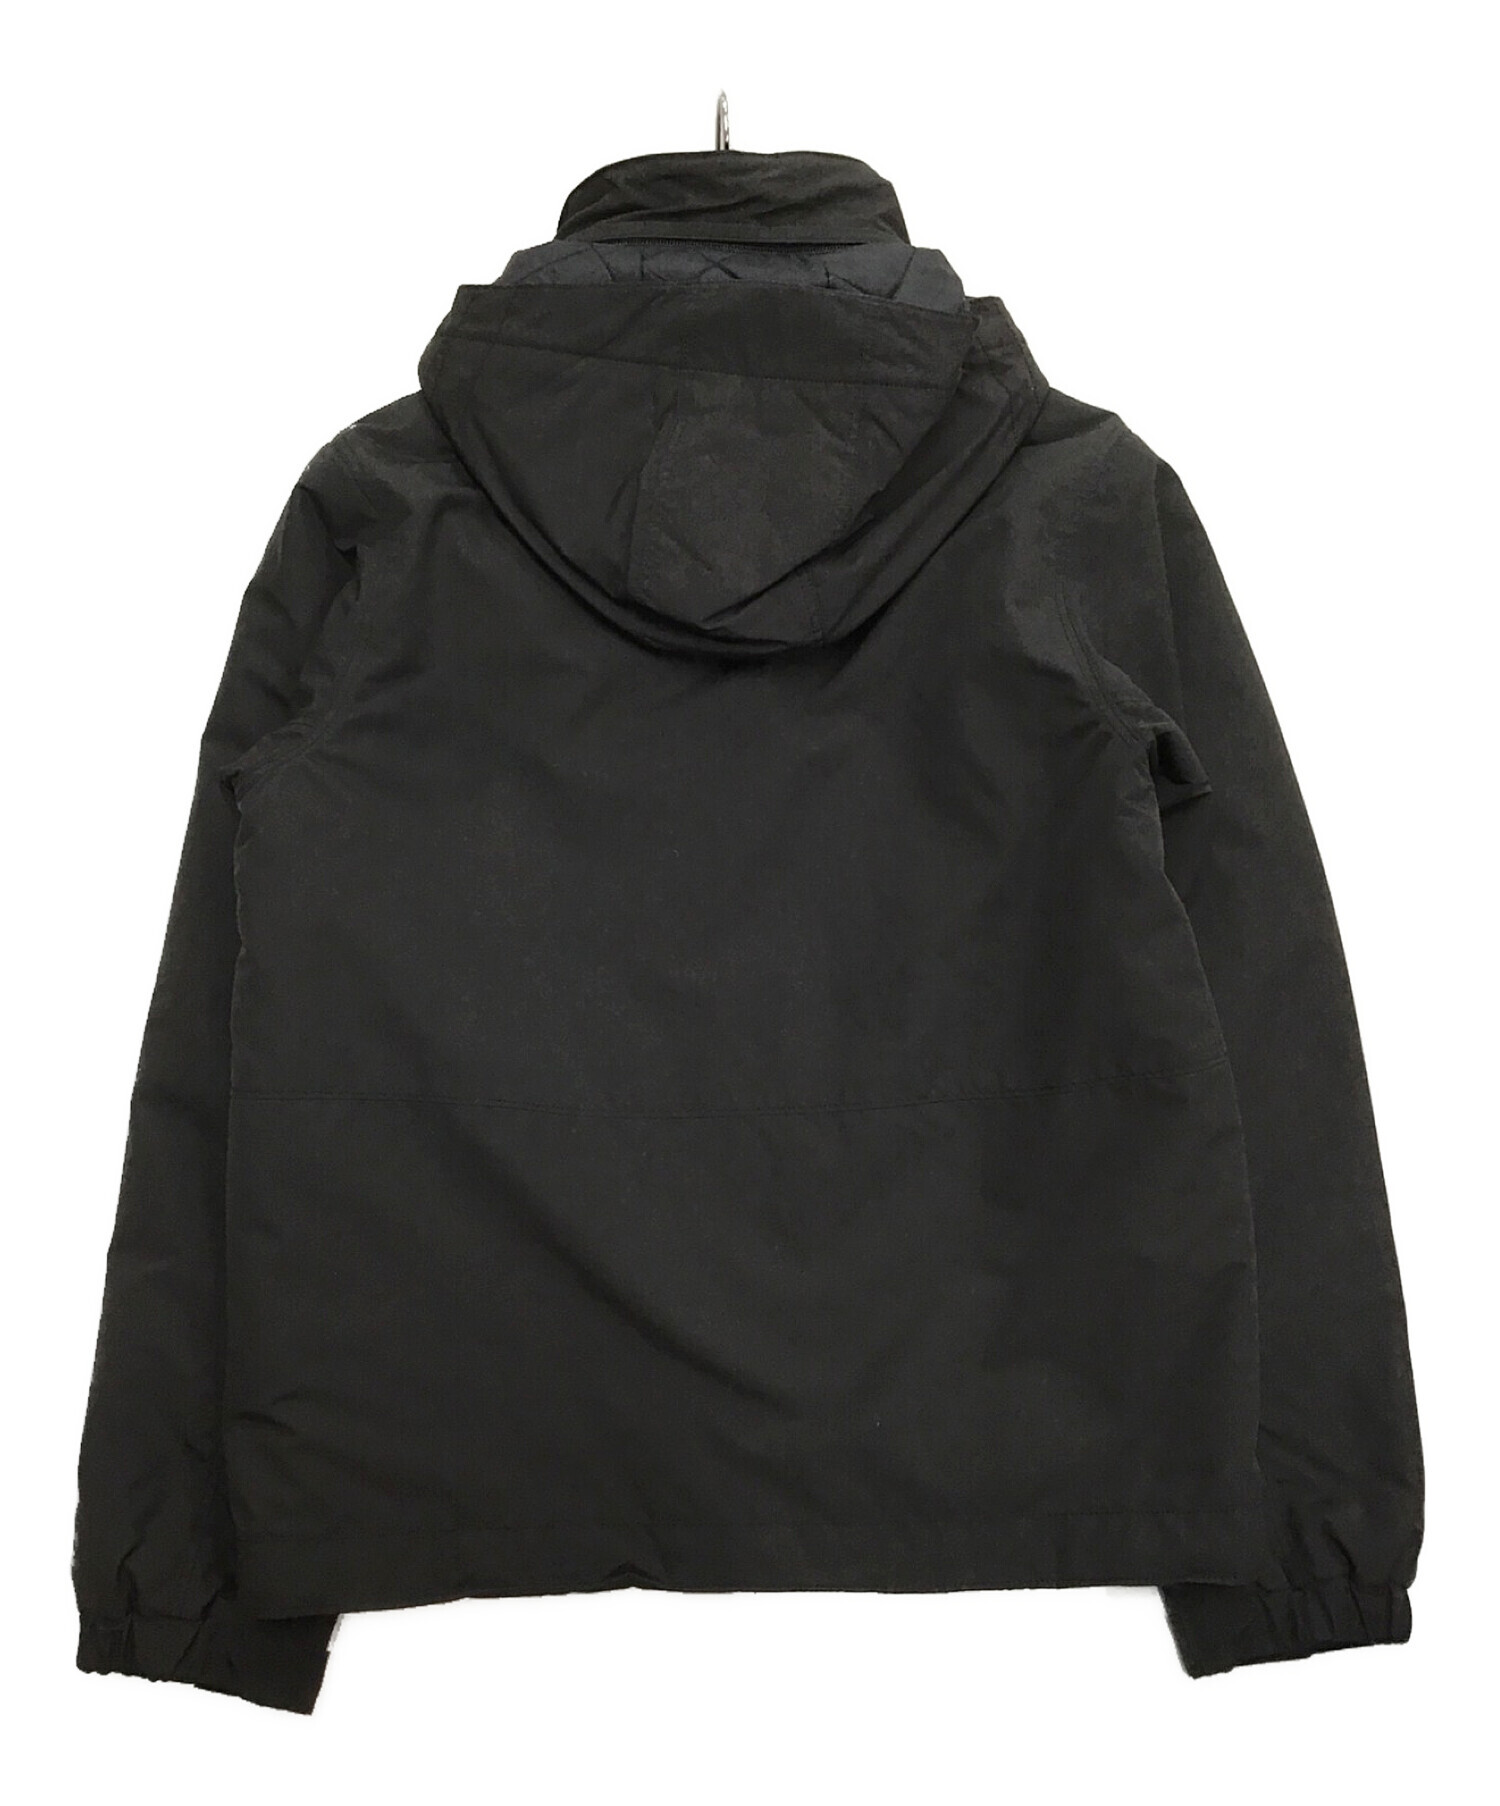 Patagonia (パタゴニア) イスマスジャケット ブラック サイズ:S